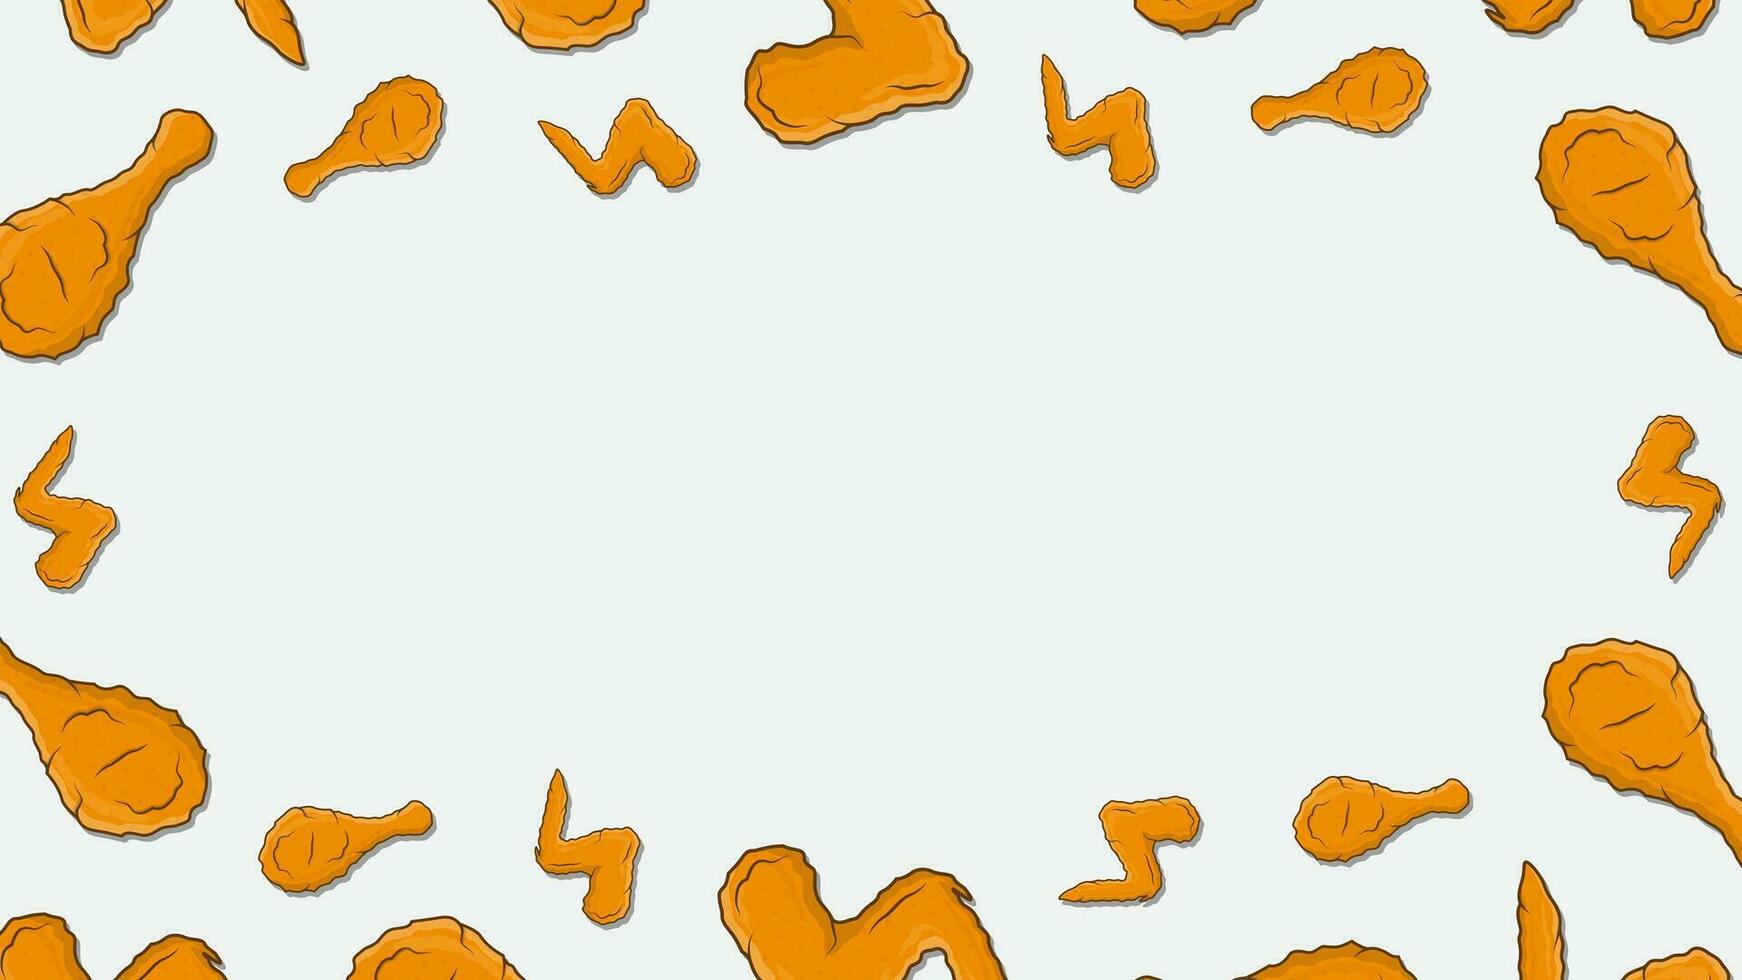 Fried Chicken Background Design Template. Fried Chicken Cartoon Vector Illustration. Chicken